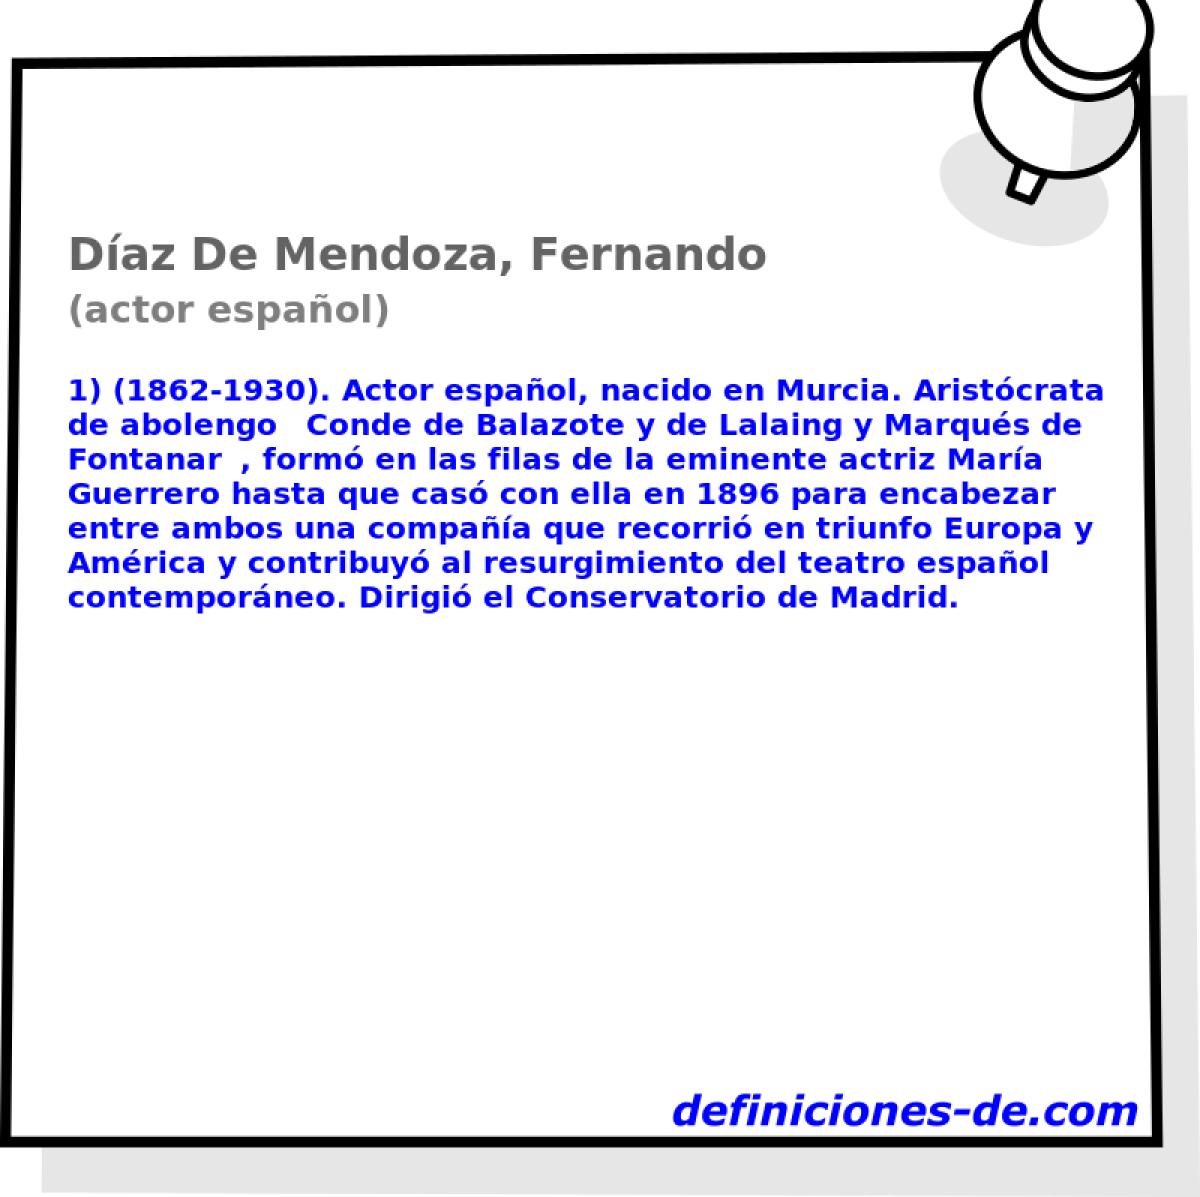 Daz De Mendoza, Fernando (actor espaol)